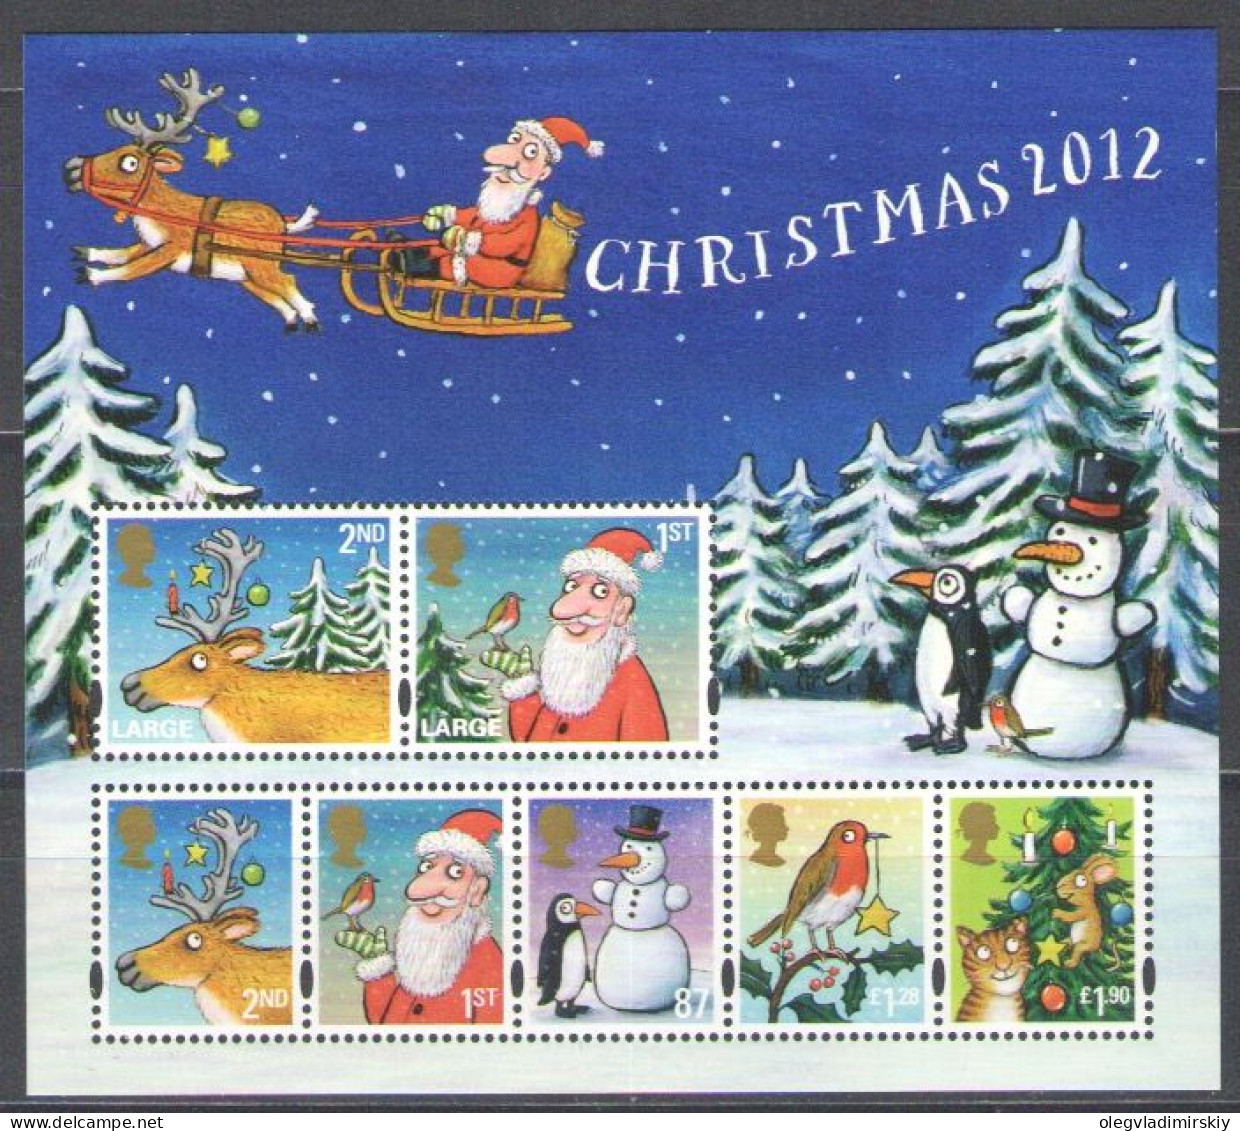 Great Britain United Kingdom 2012 Christmas Set Of 7 Classic Stamps In Block MNH - Blokken & Velletjes